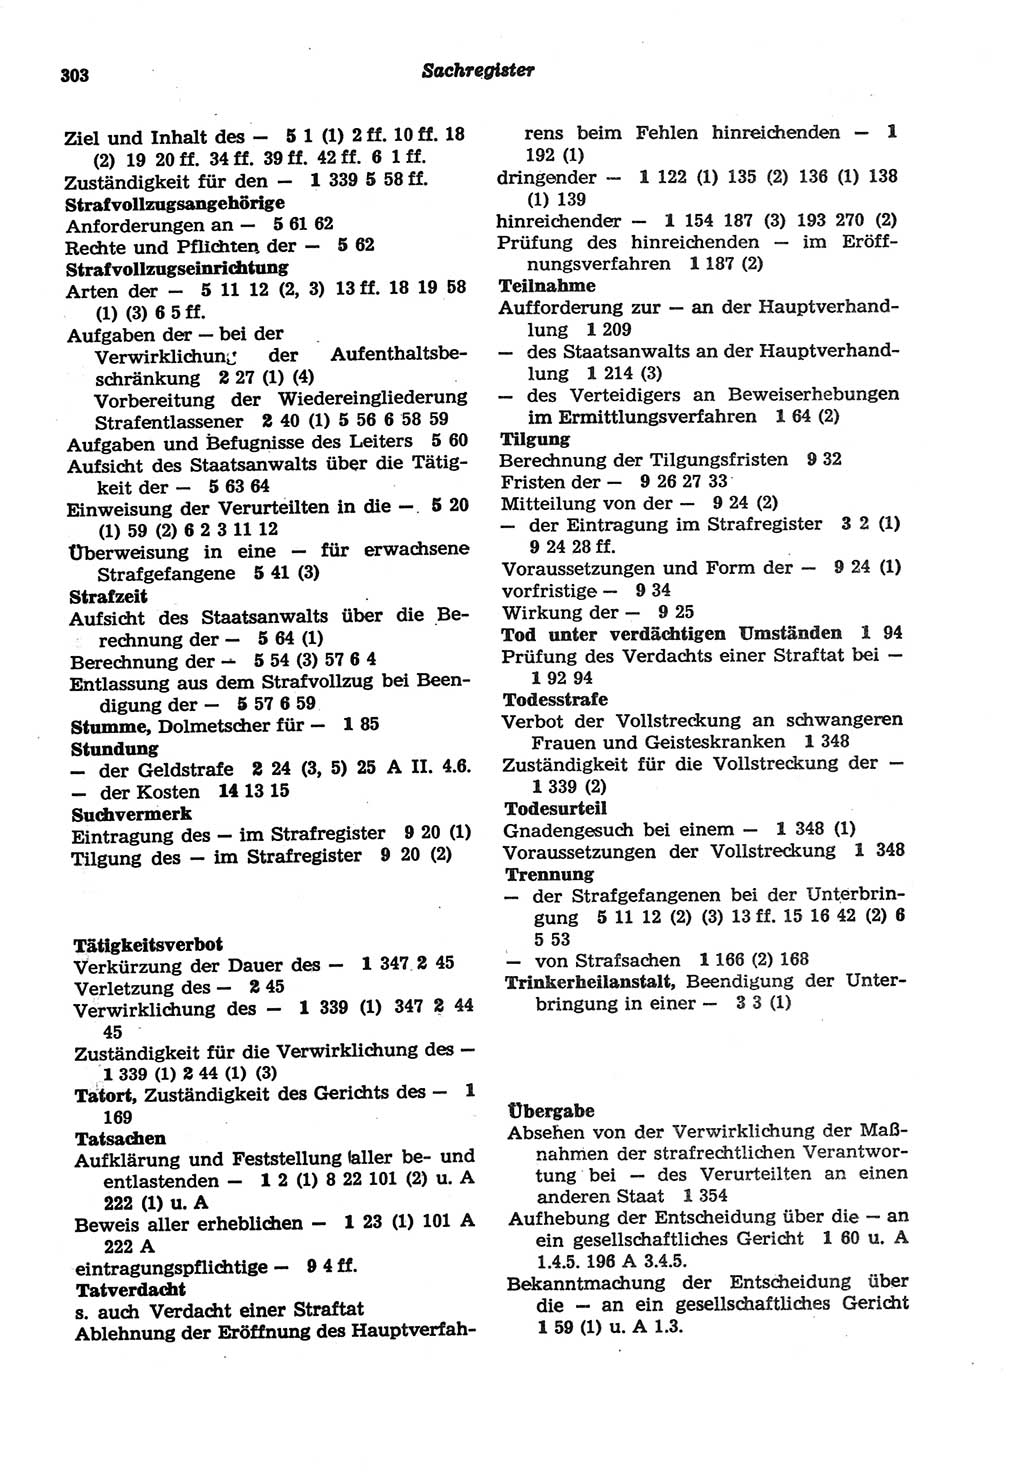 Strafprozeßordnung (StPO) der Deutschen Demokratischen Republik (DDR) sowie angrenzende Gesetze und Bestimmungen 1977, Seite 303 (StPO DDR Ges. Best. 1977, S. 303)